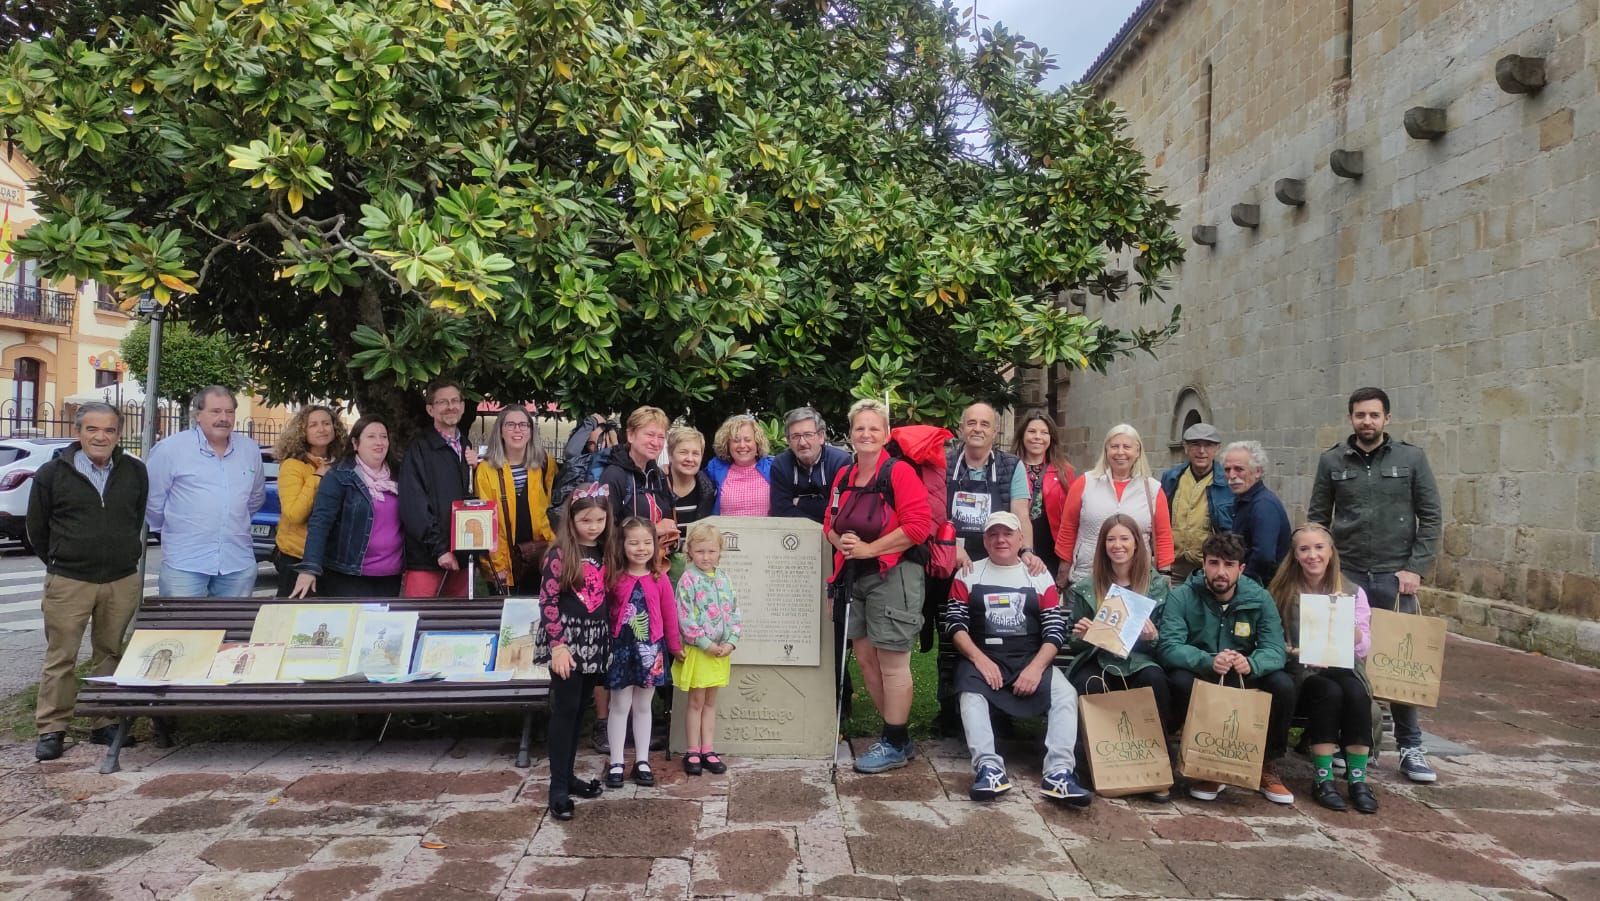 La Comarca de la Sidra descorcha la ruta jacobea: Villaviciosa, Colunga y Sariego participan en los Días Europeos del Camino de Santiago